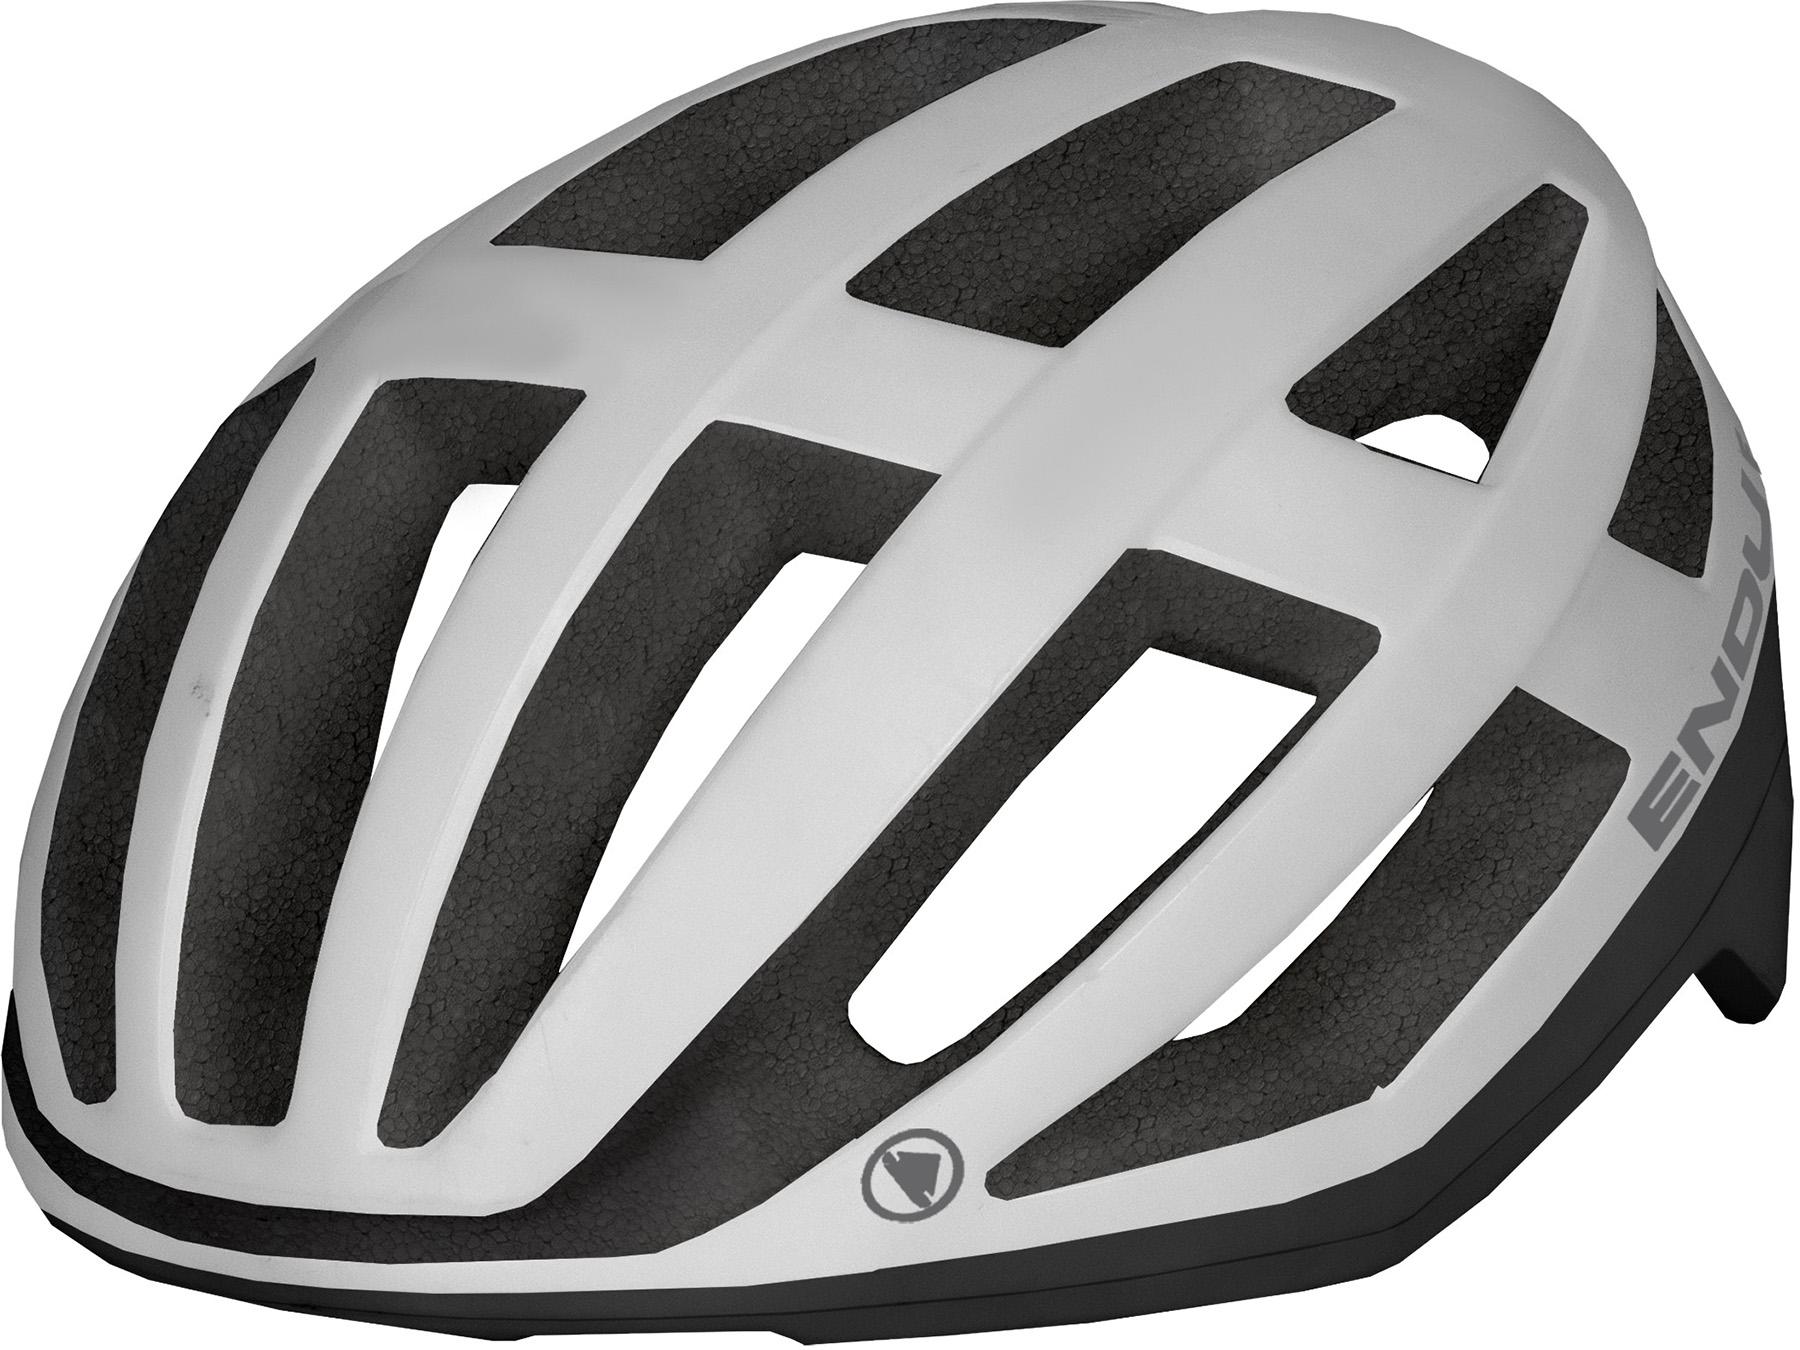 Endura Fs260-pro Mips Helmet Ii - White